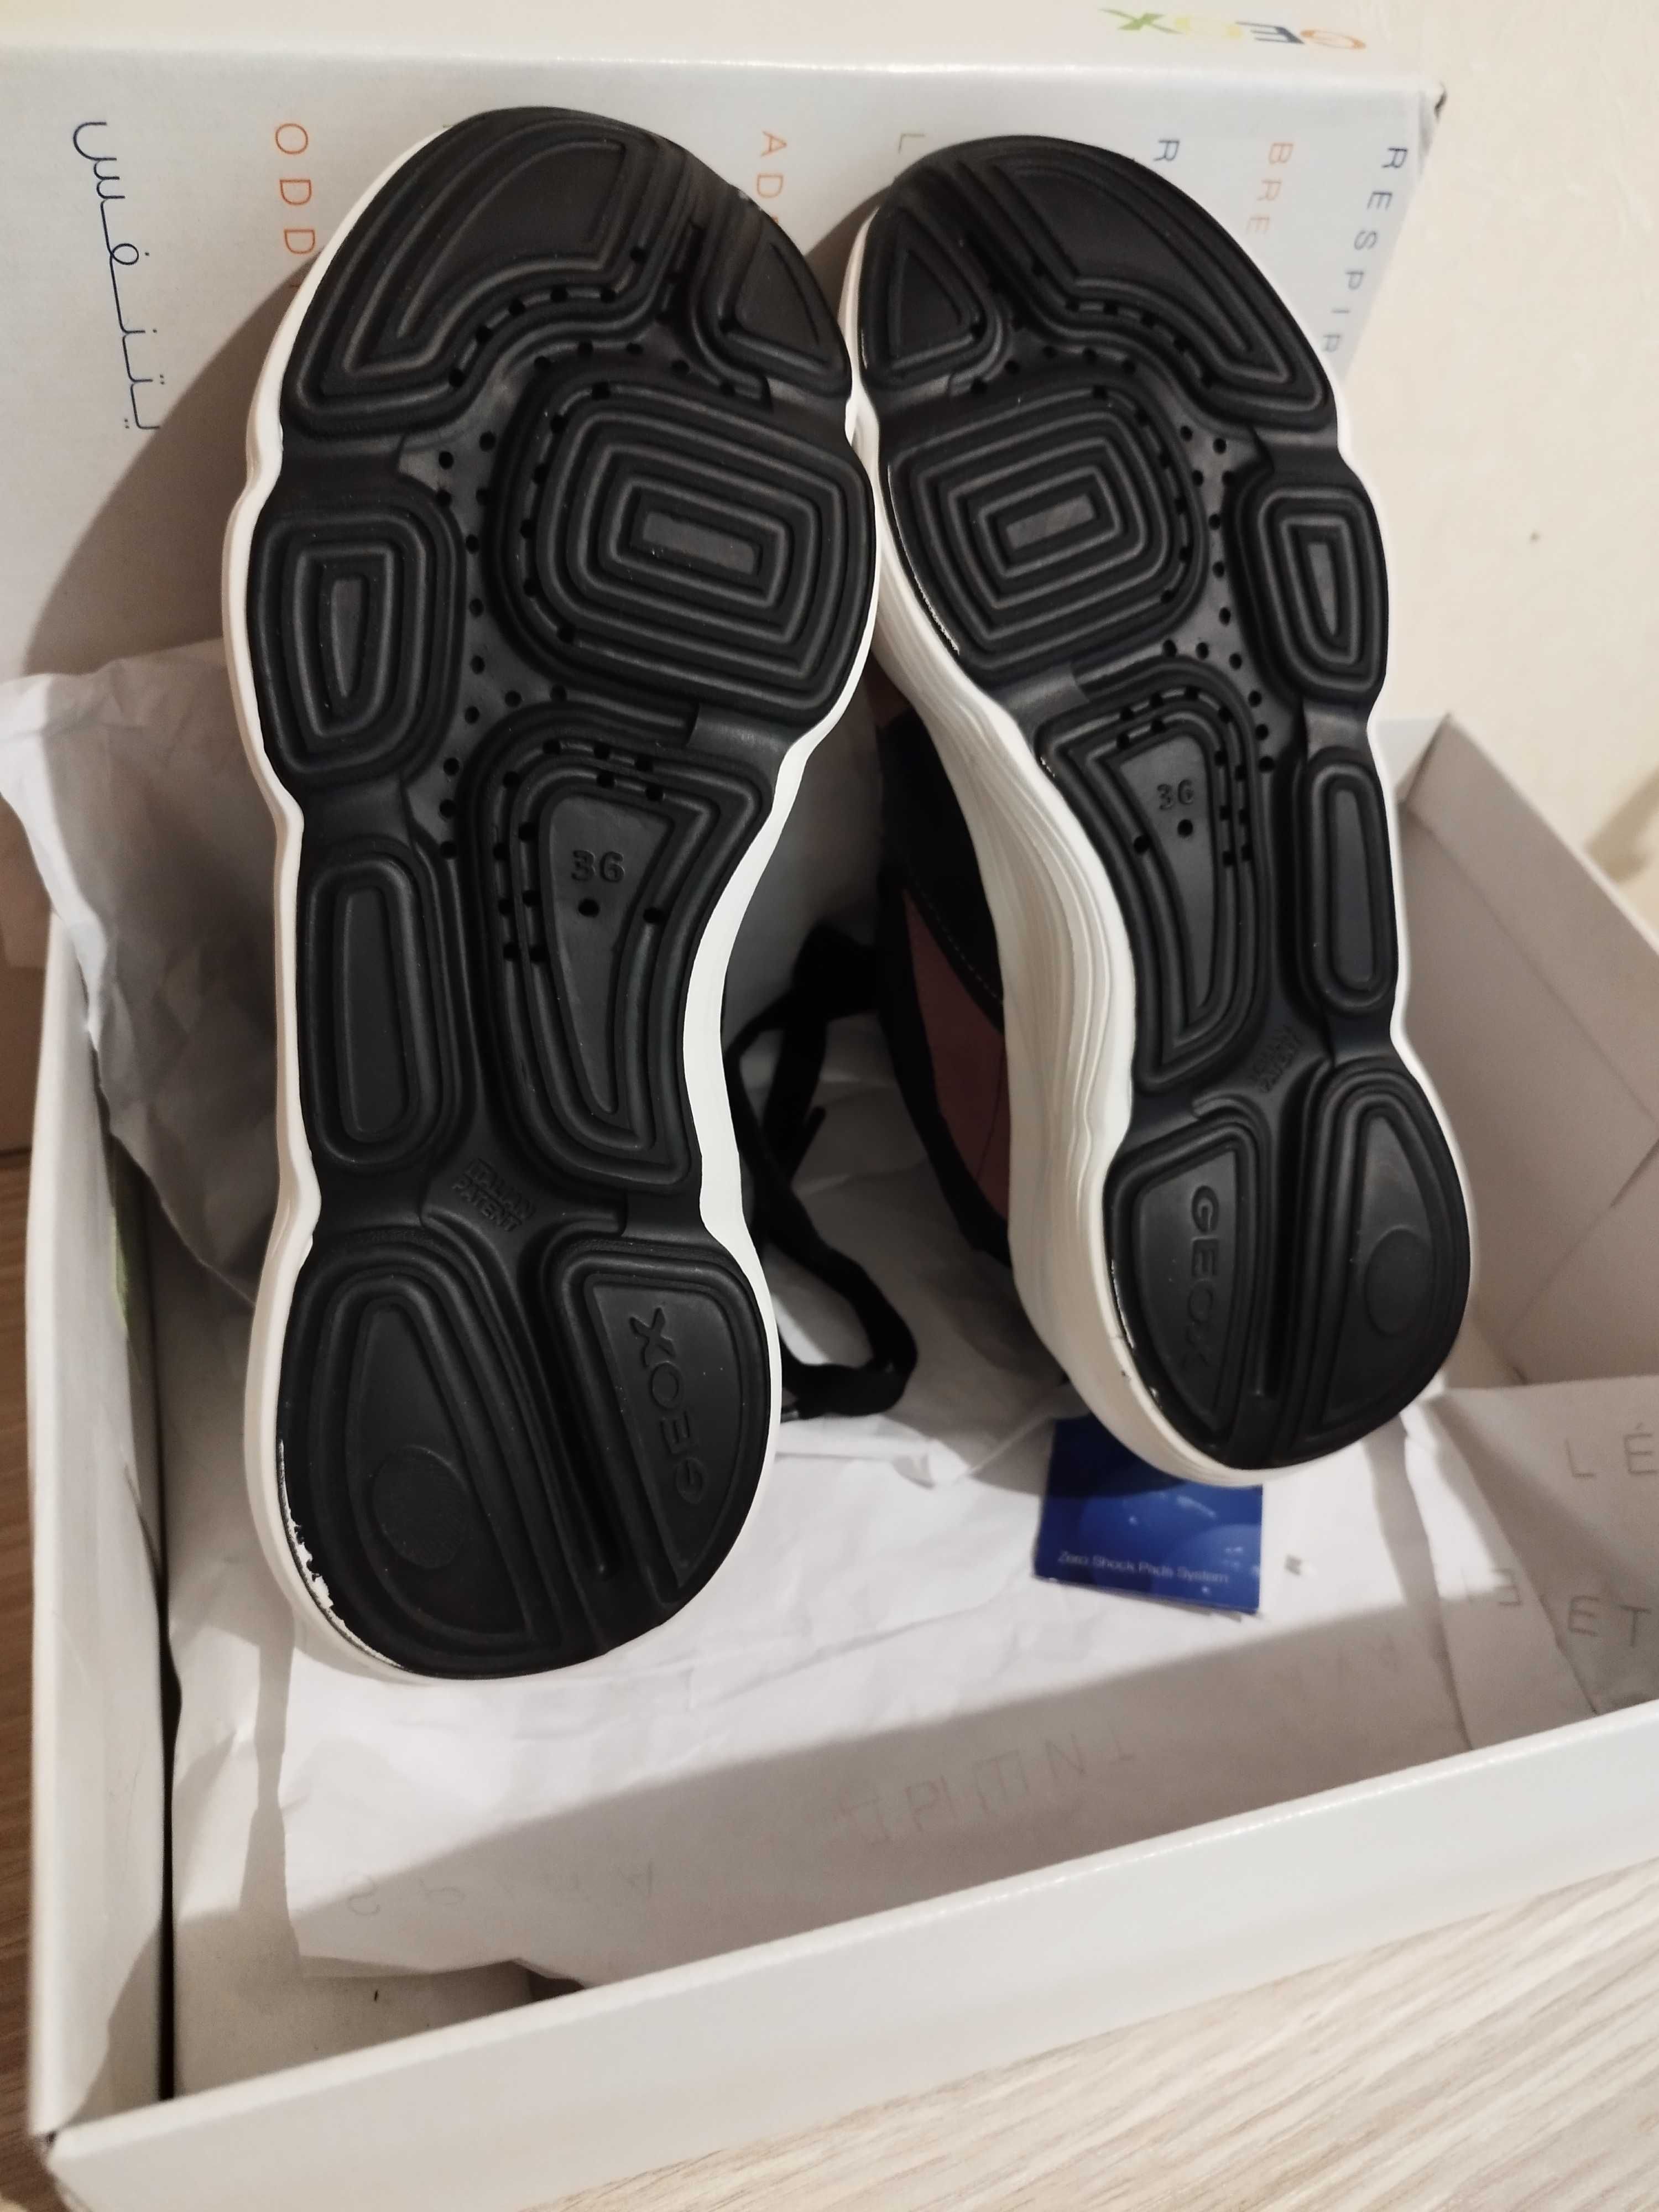 НОВЫЕ высокотехнологичные кожаные кроссовки, 35 размер